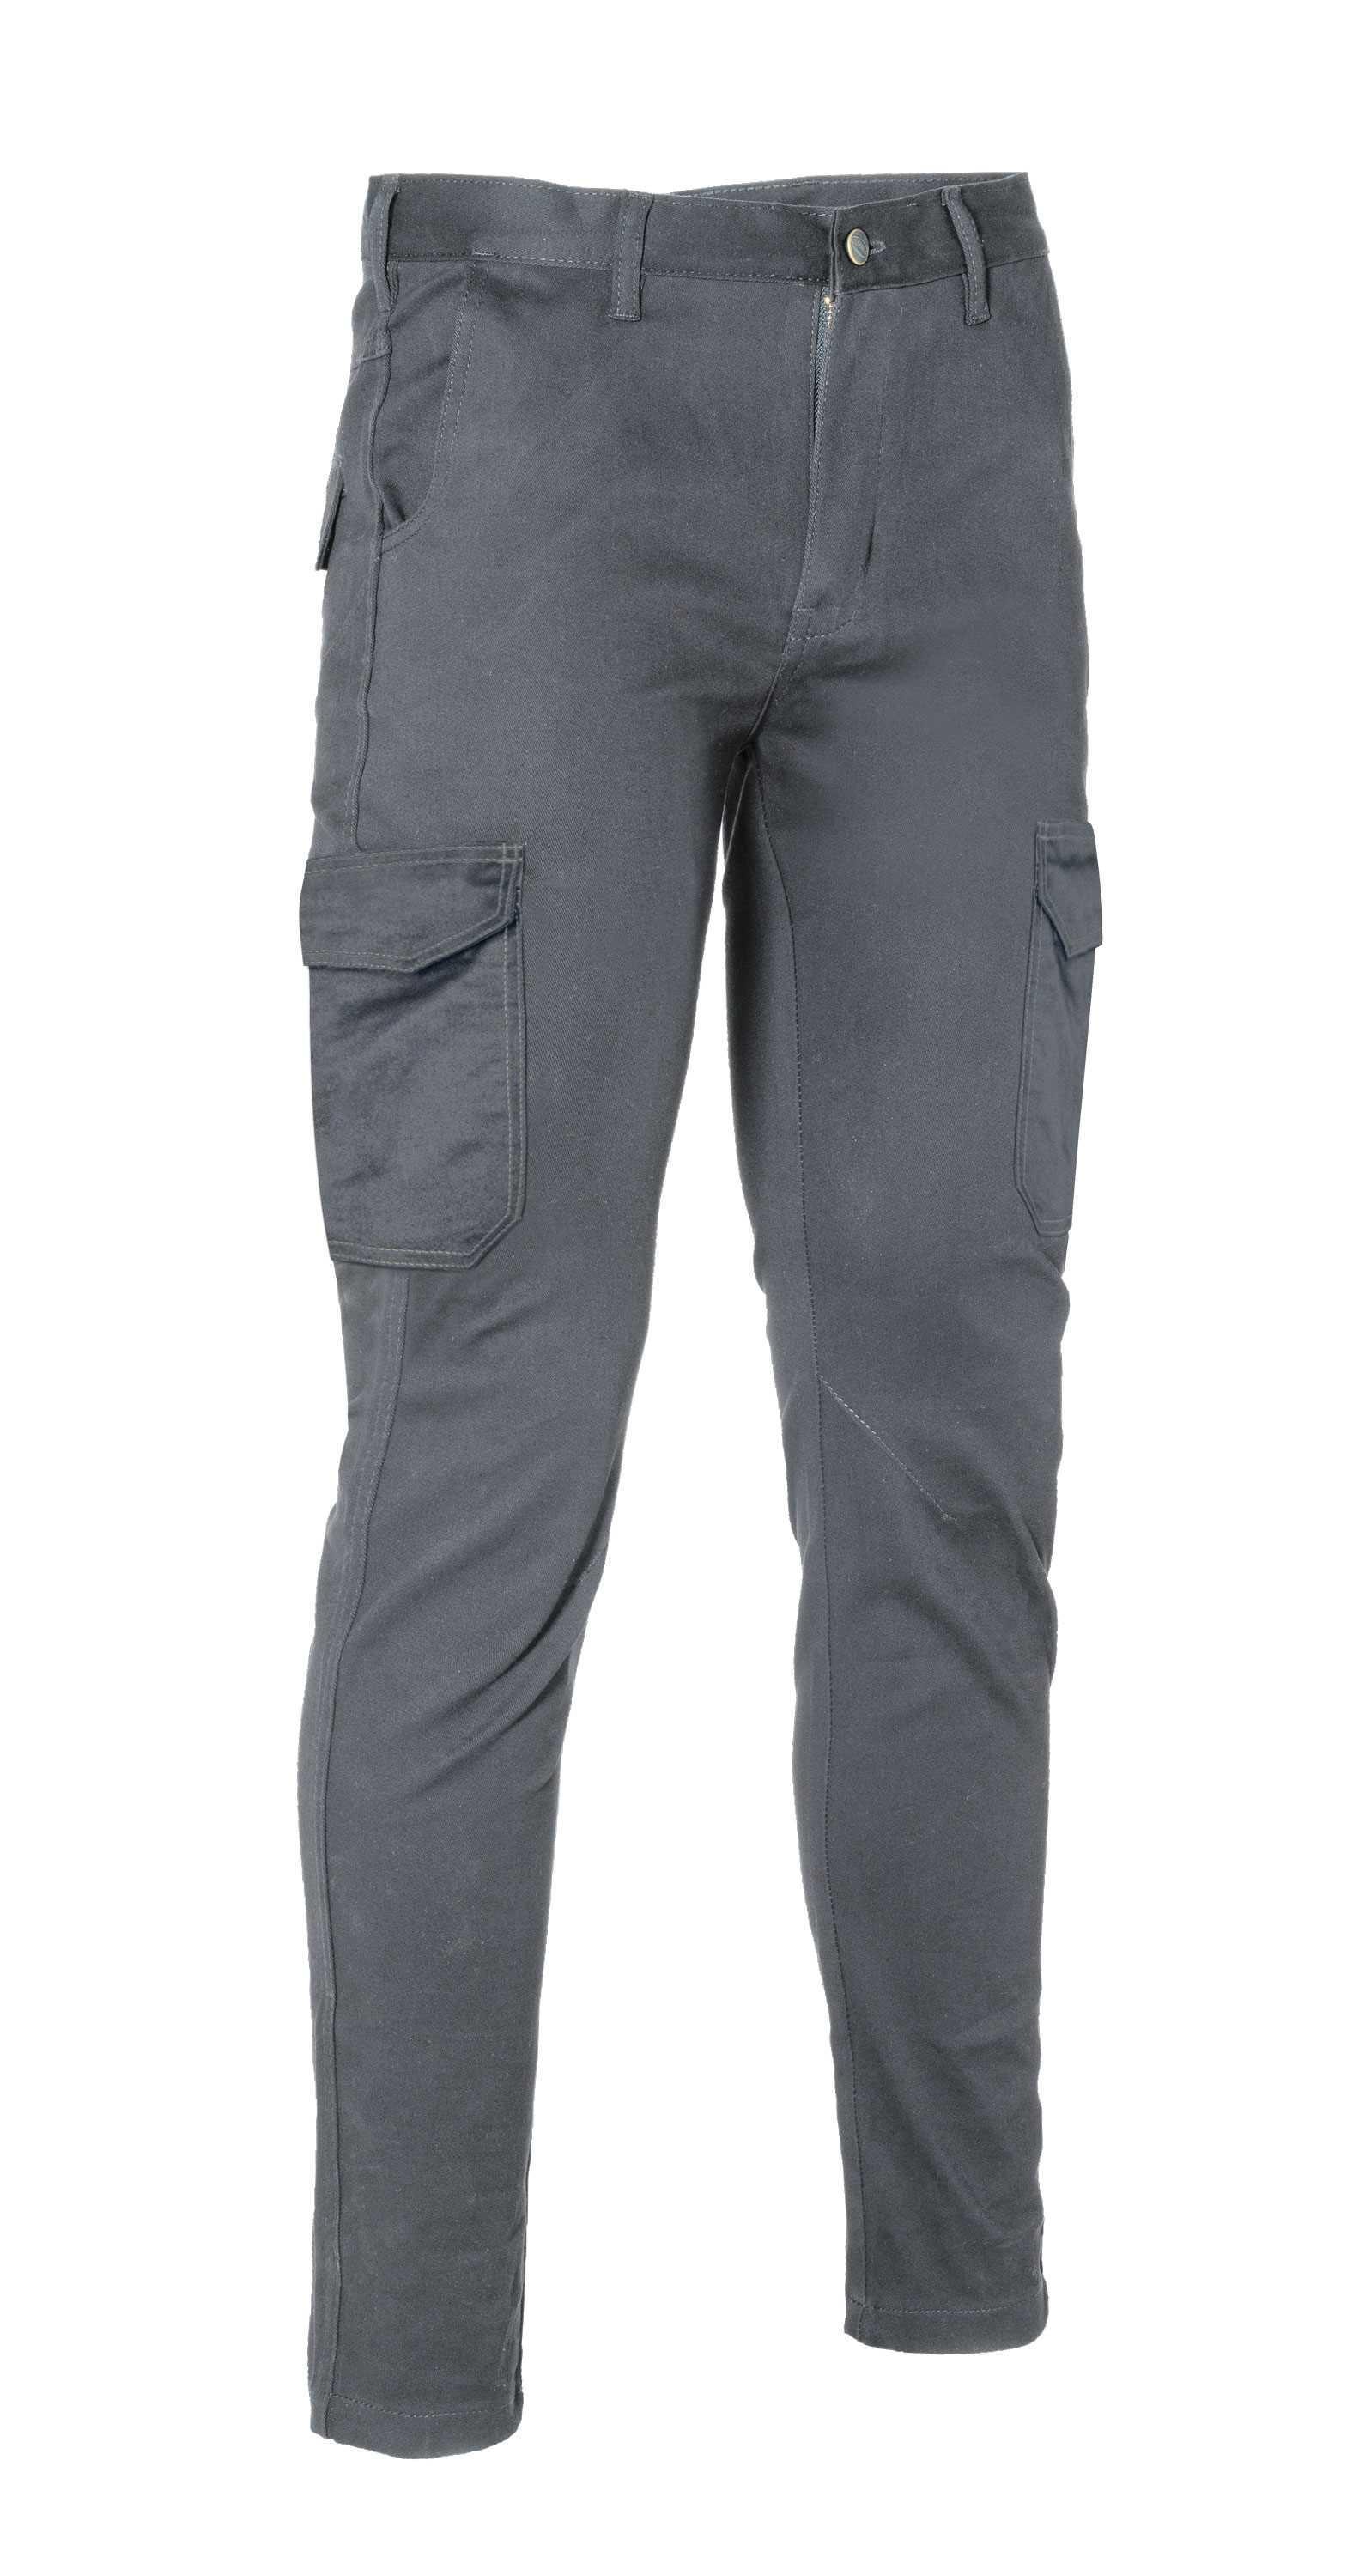 Pantaloni invernali da lavoro grigio taglia 46 Logica LOGIWINTER2-46